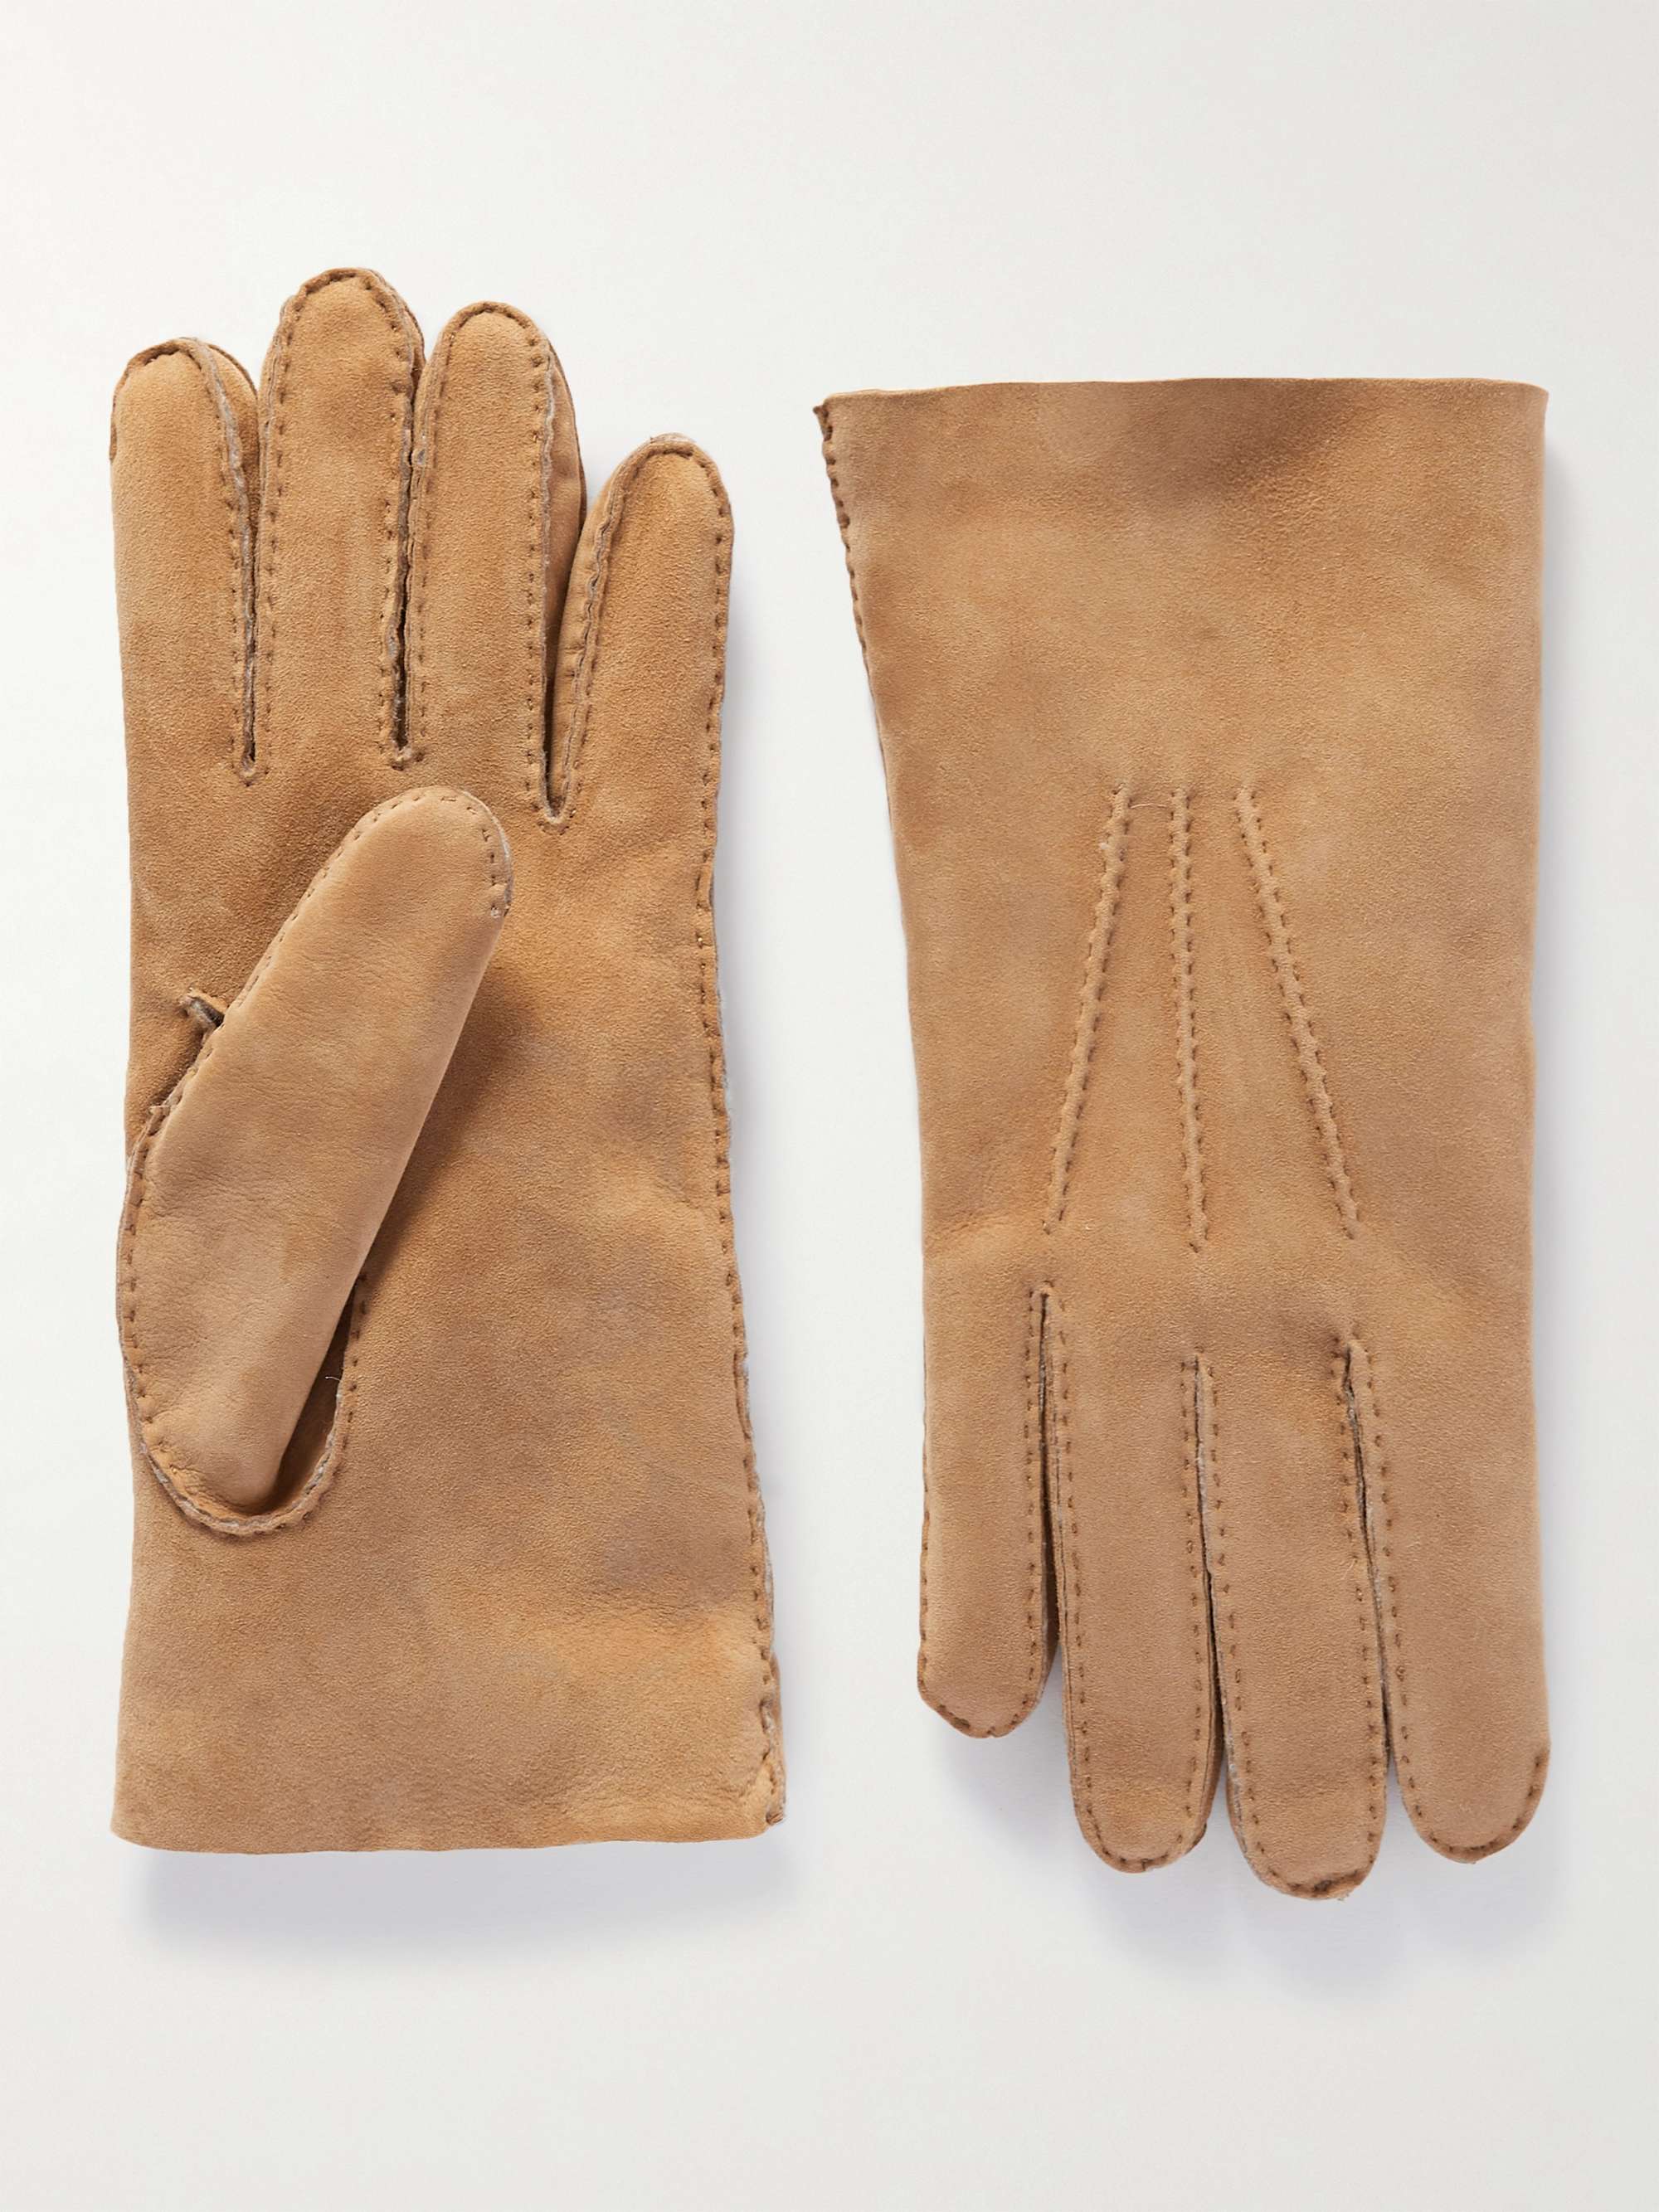 UMIT BENAN B+ Shearling Gloves